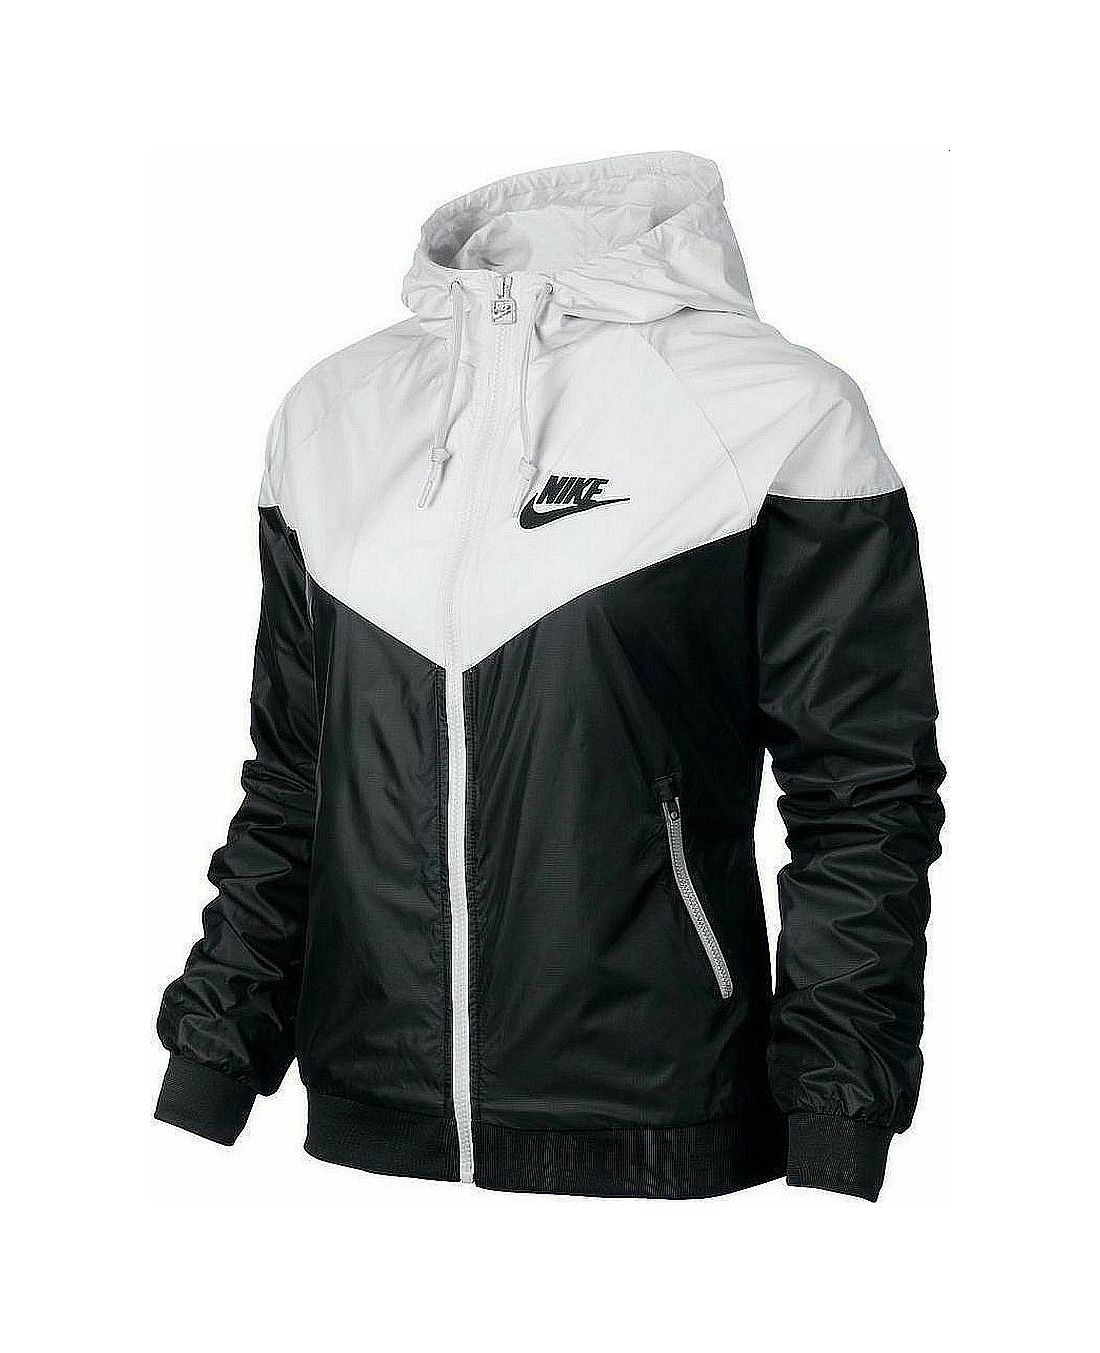 Nike Jacket Windbreaker 545909-011